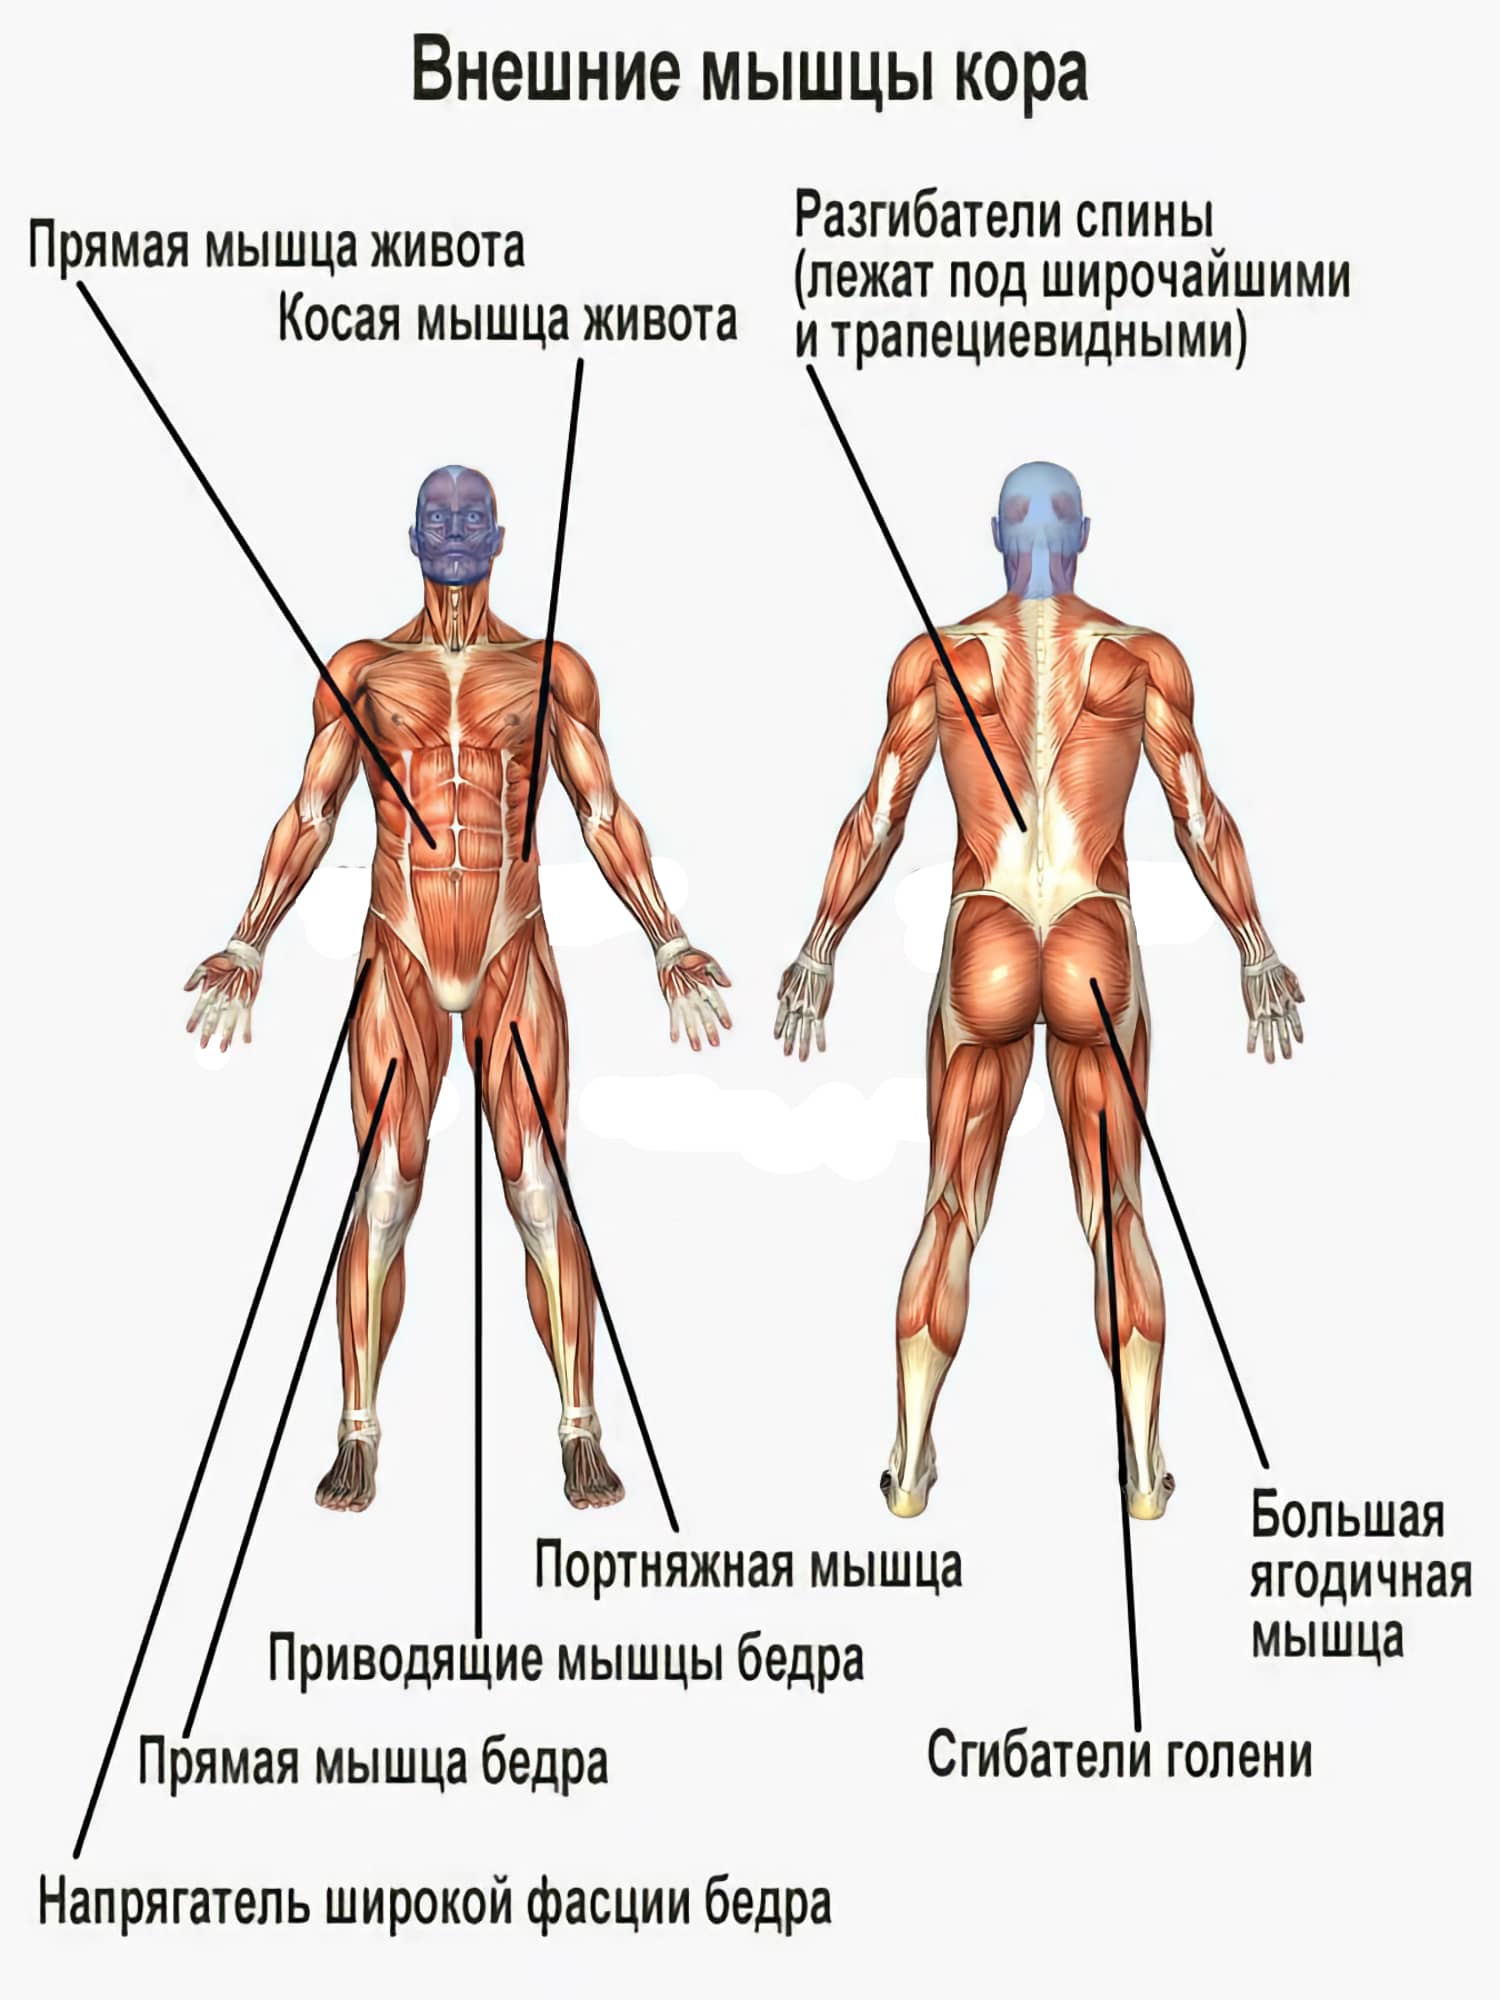 Мышцы кора: упражнения для укрепления мышц кора